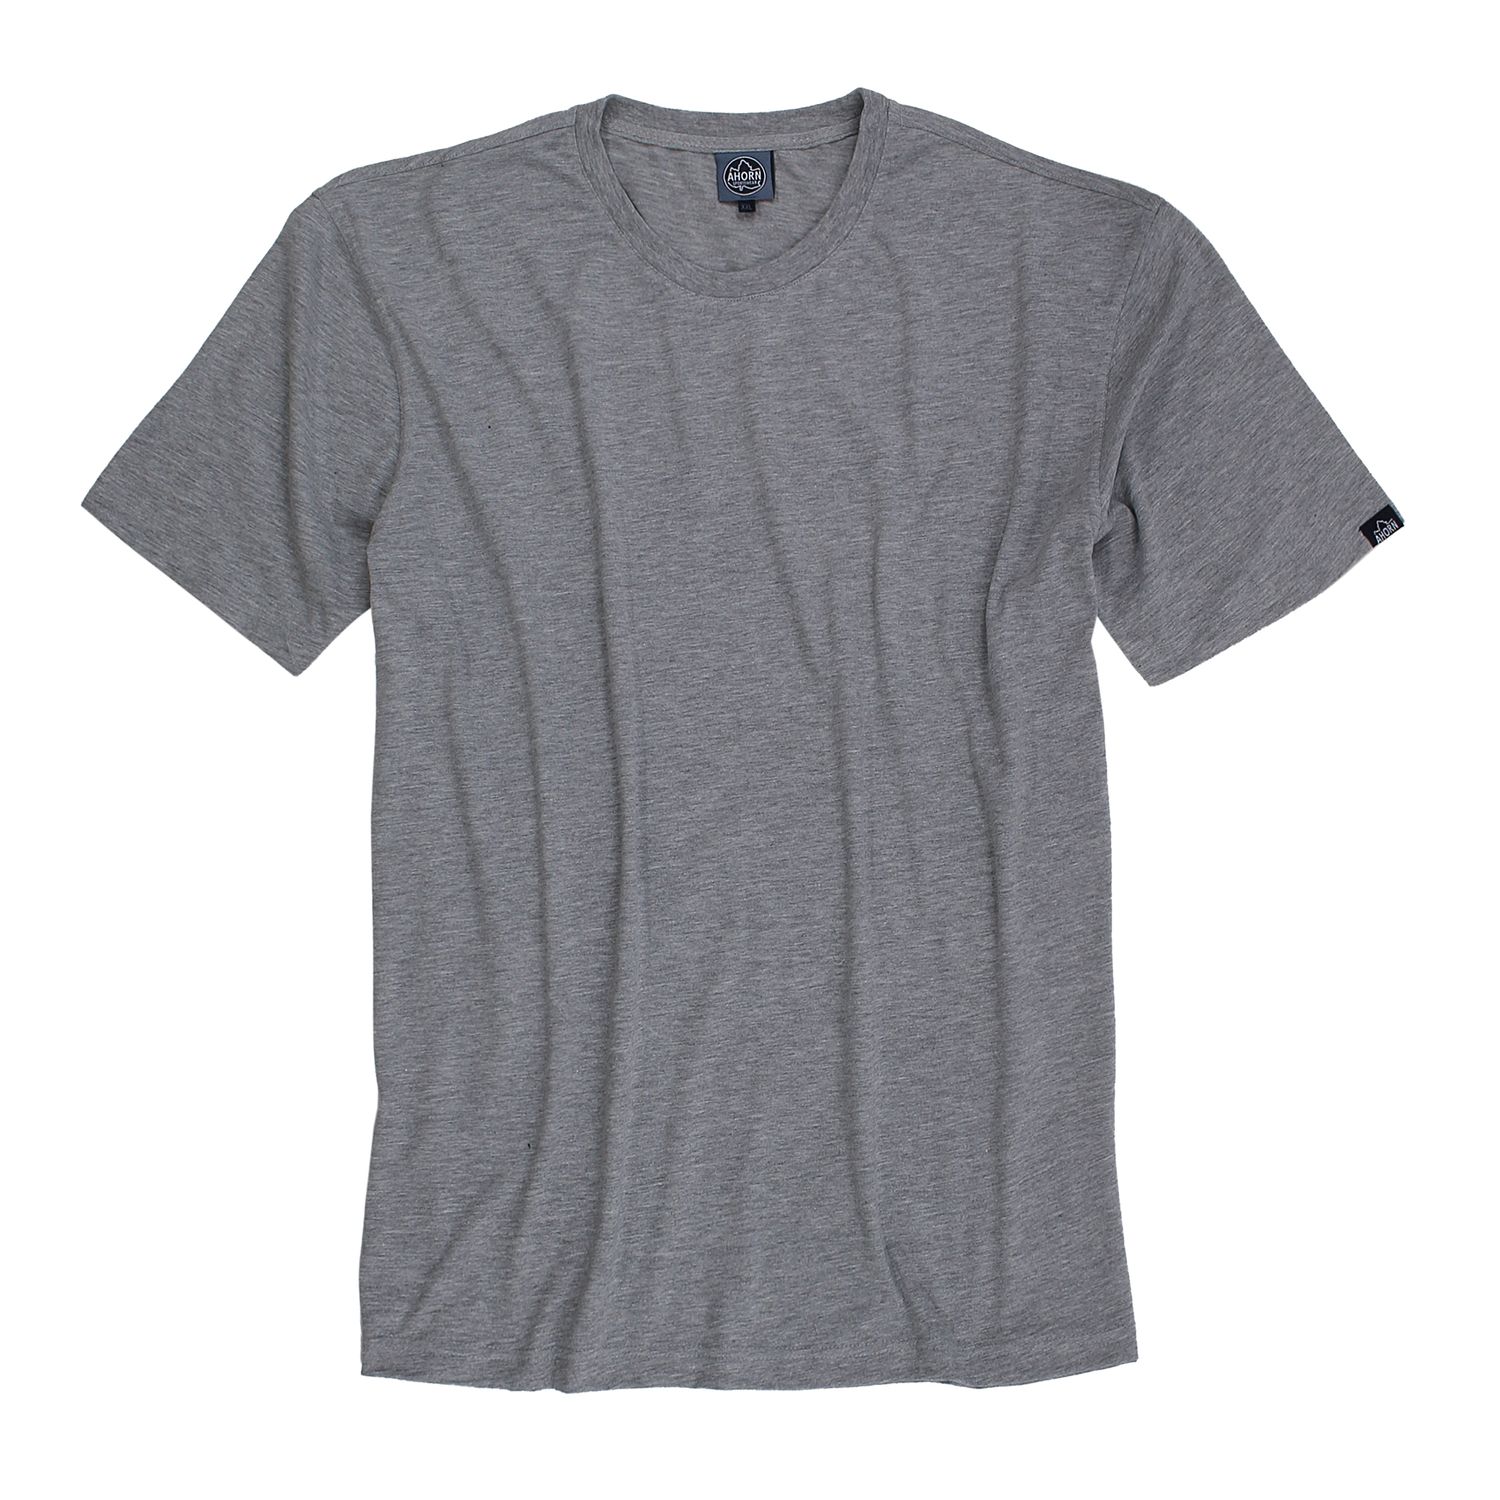 Grau melierte T-Shirts im Doppelpack von Ahorn Sportswear in großen Größen bis 10XL